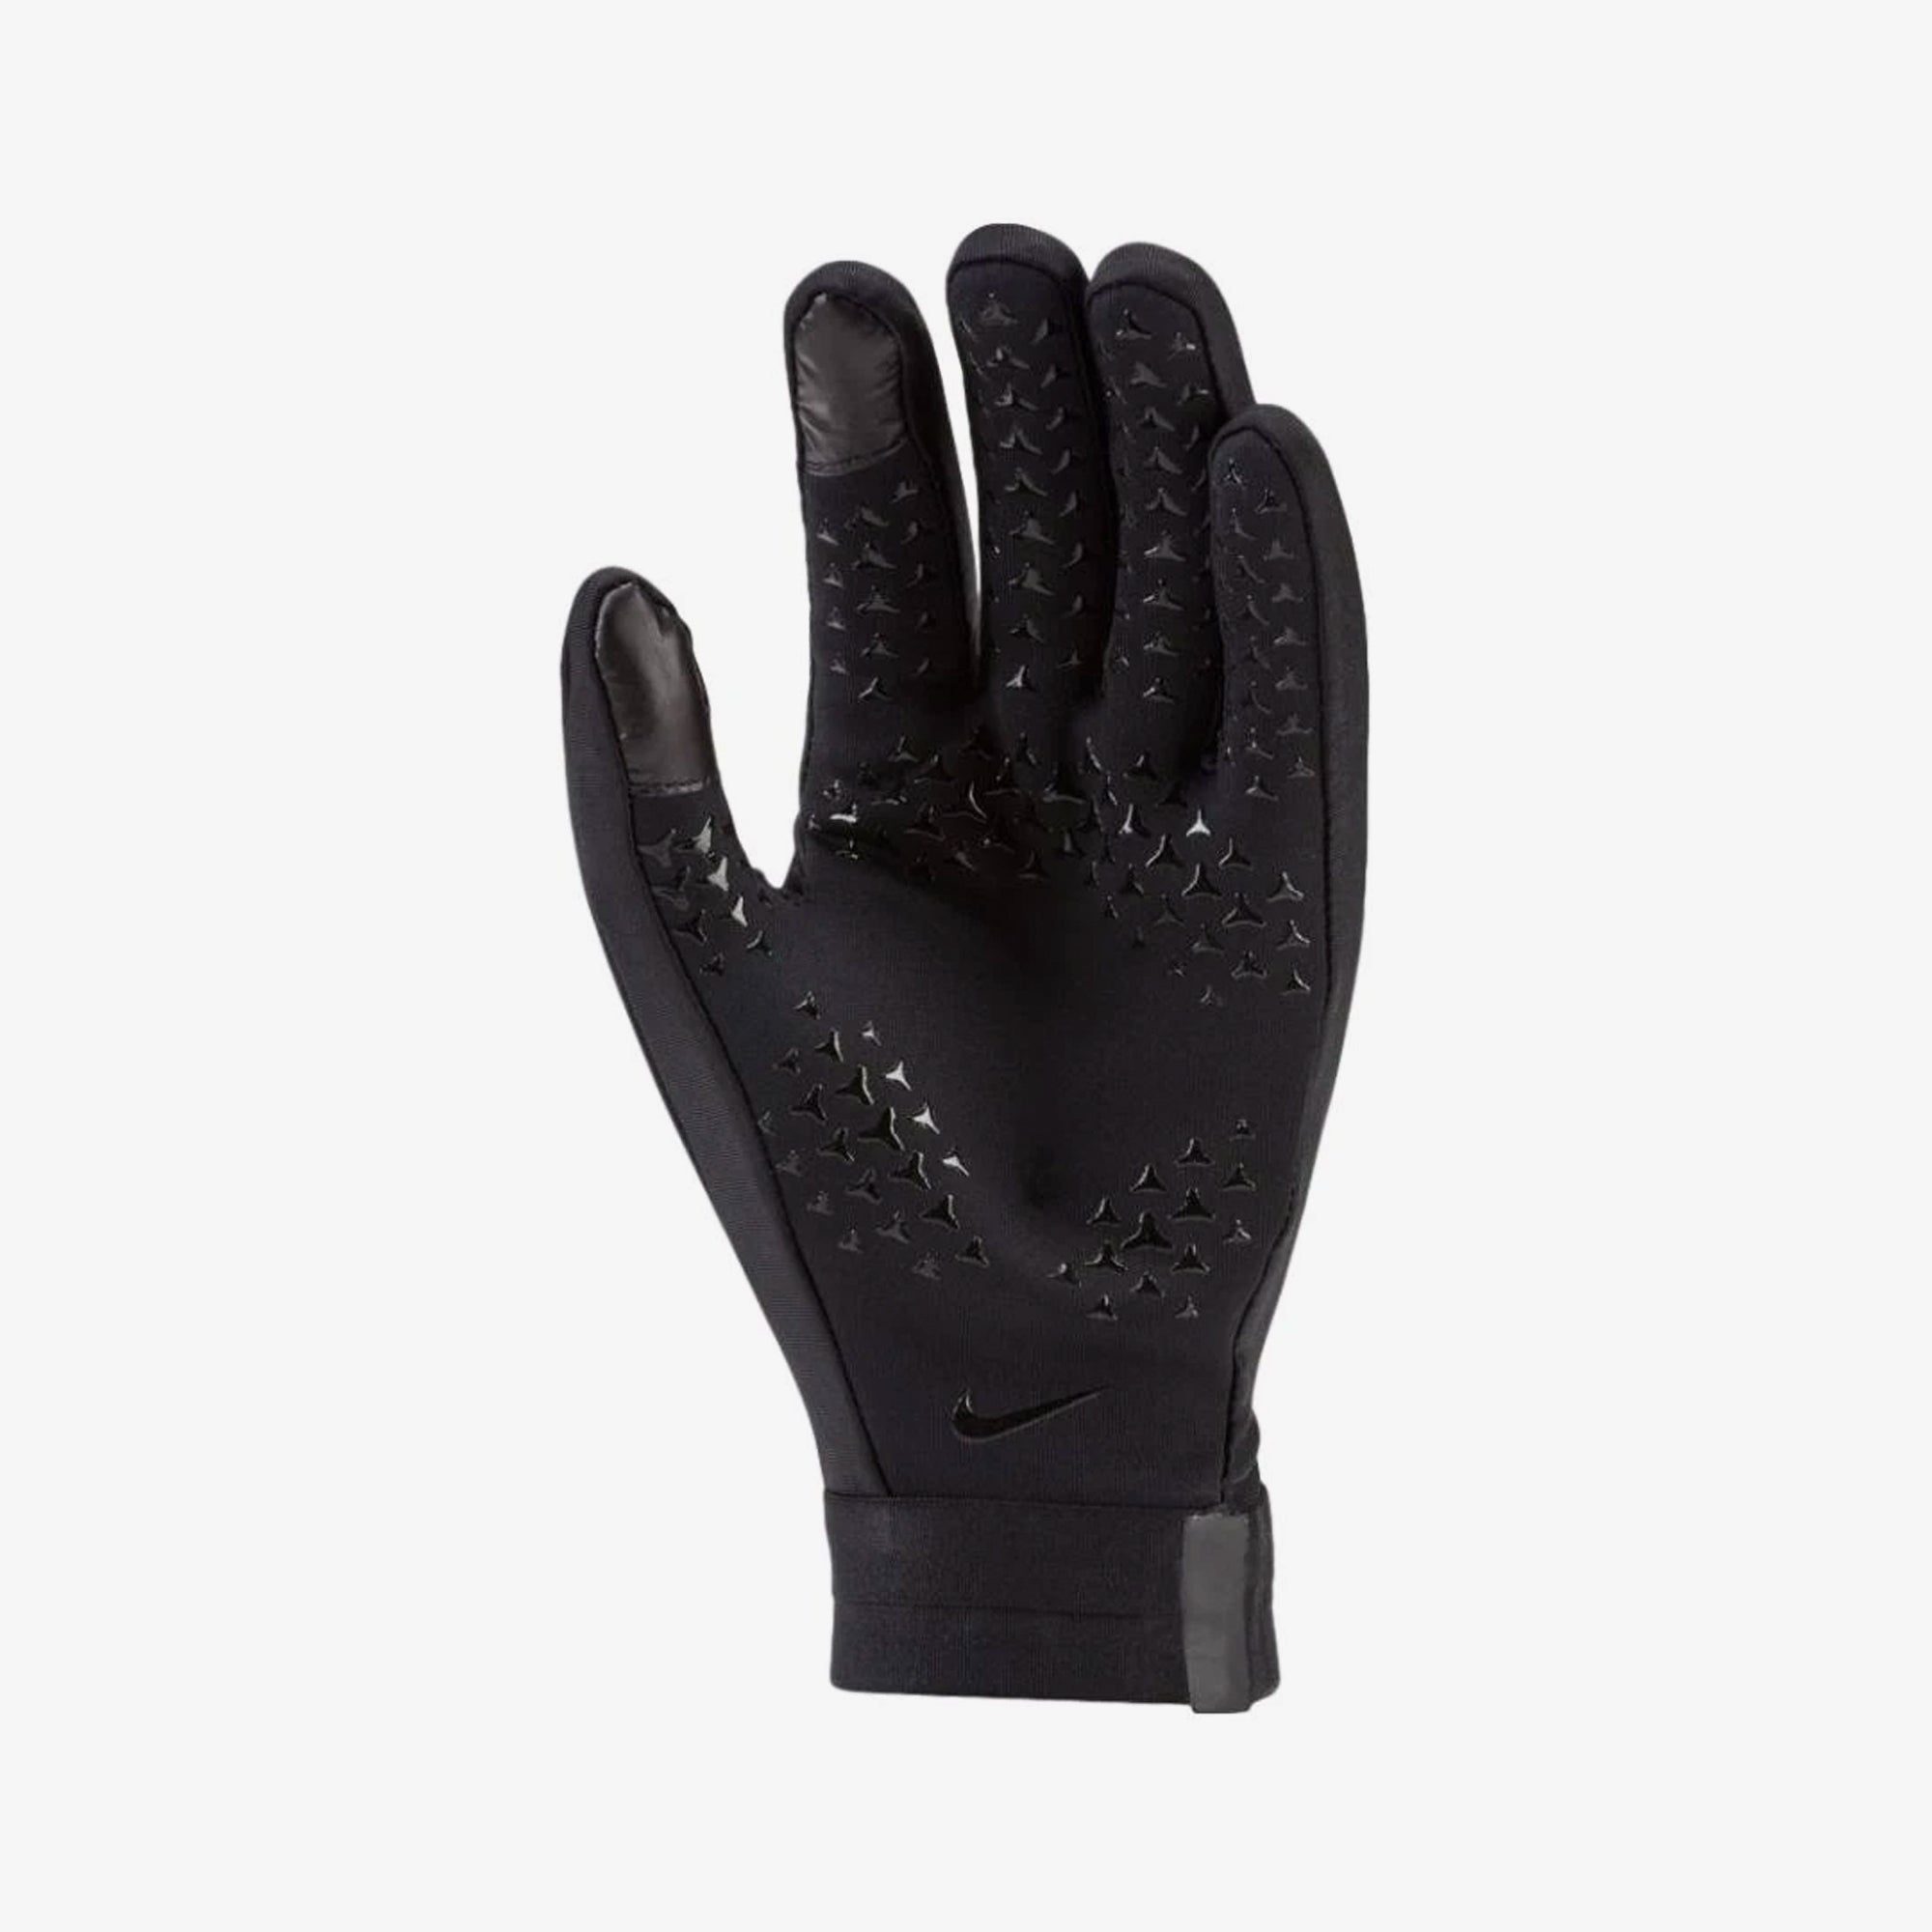 Hyperwarm Academy Fieldplayer Glove